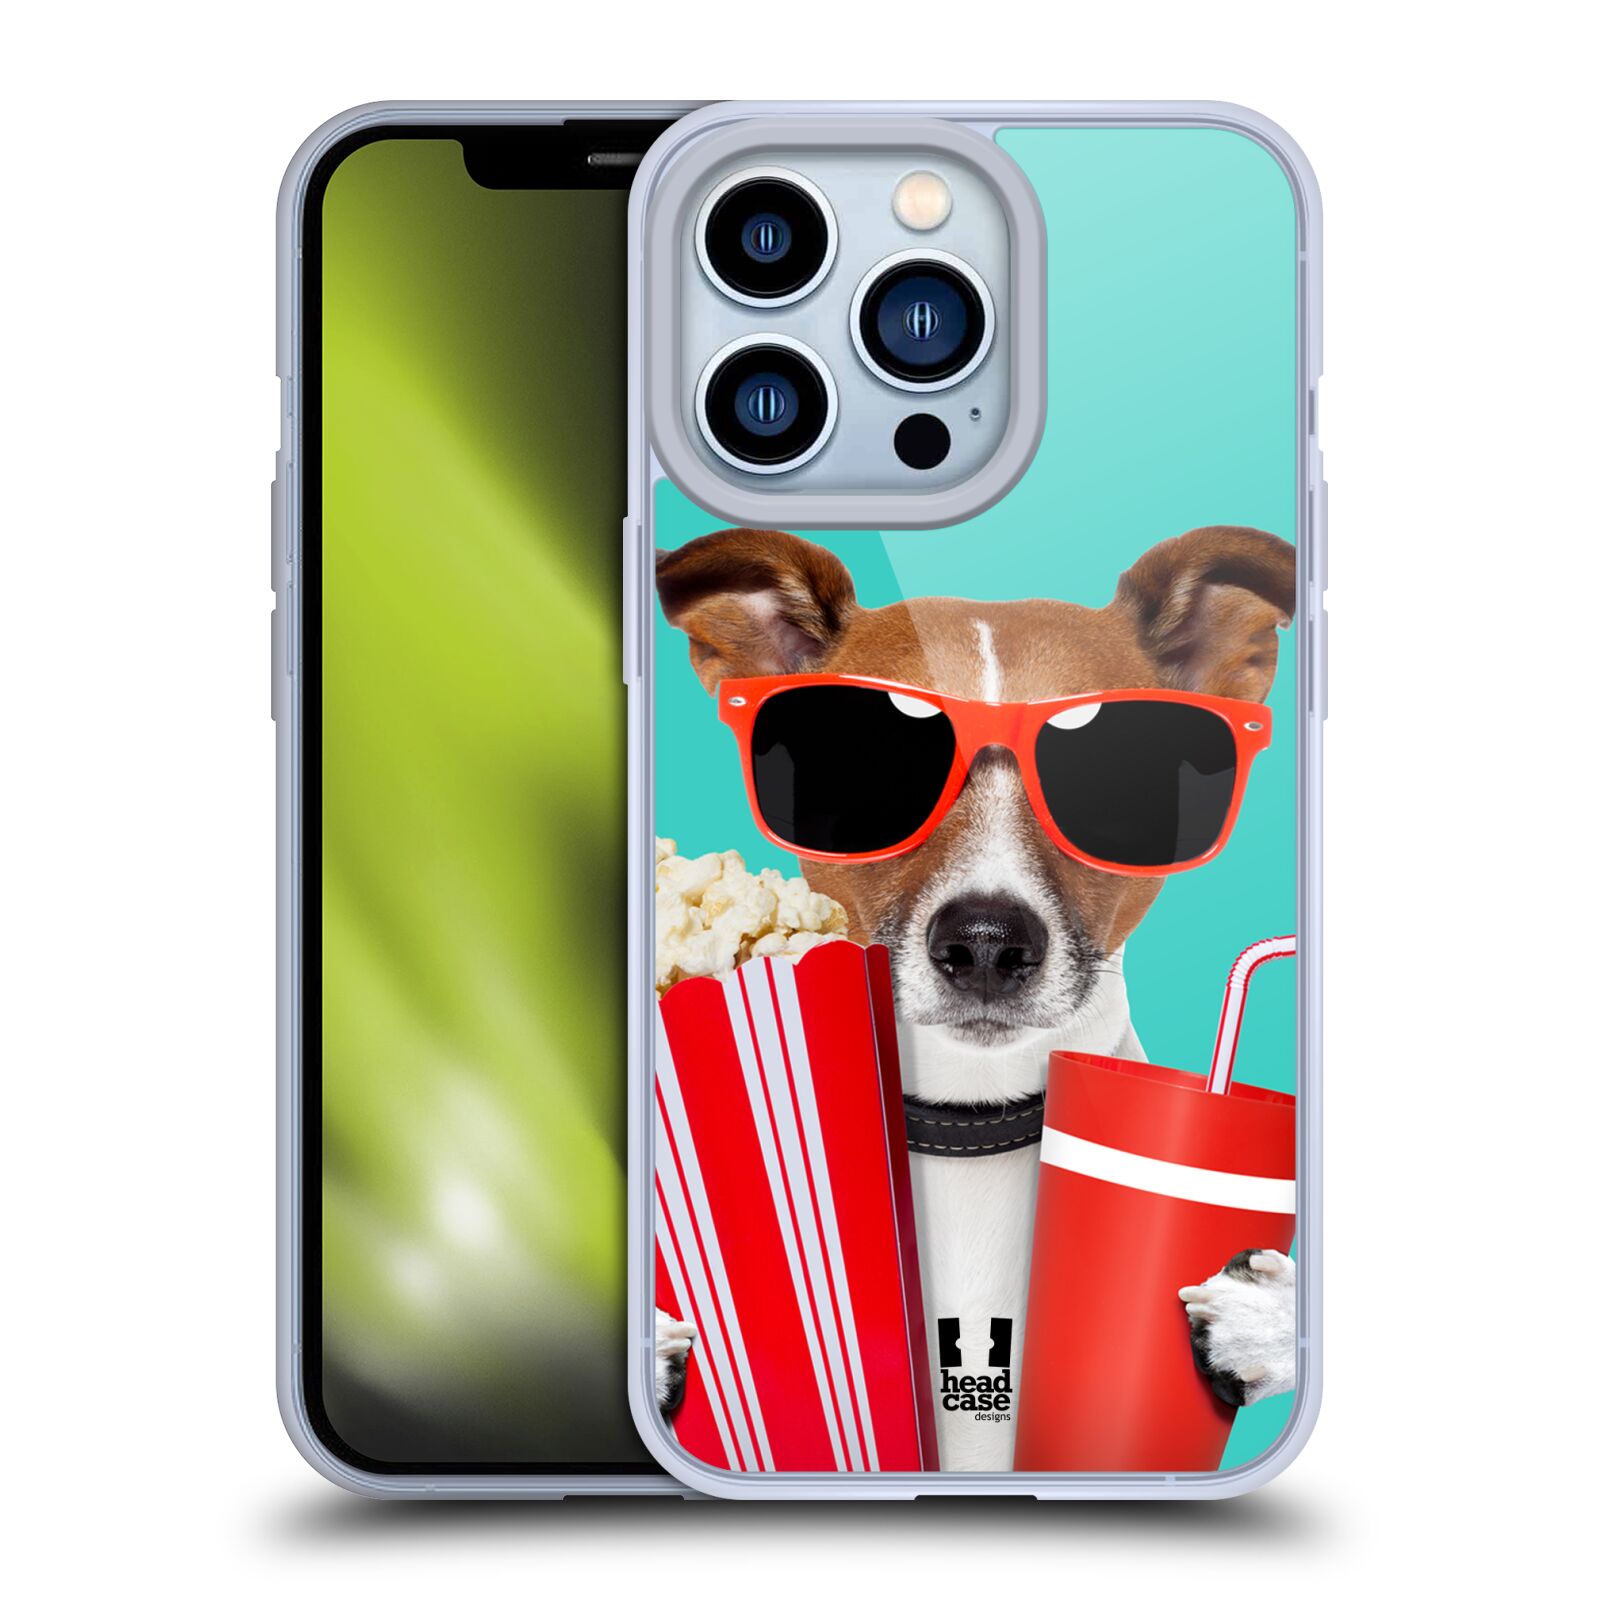 Plastový obal HEAD CASE na mobil Apple Iphone 13 PRO vzor Legrační zvířátka pejsek v kině s popkornem